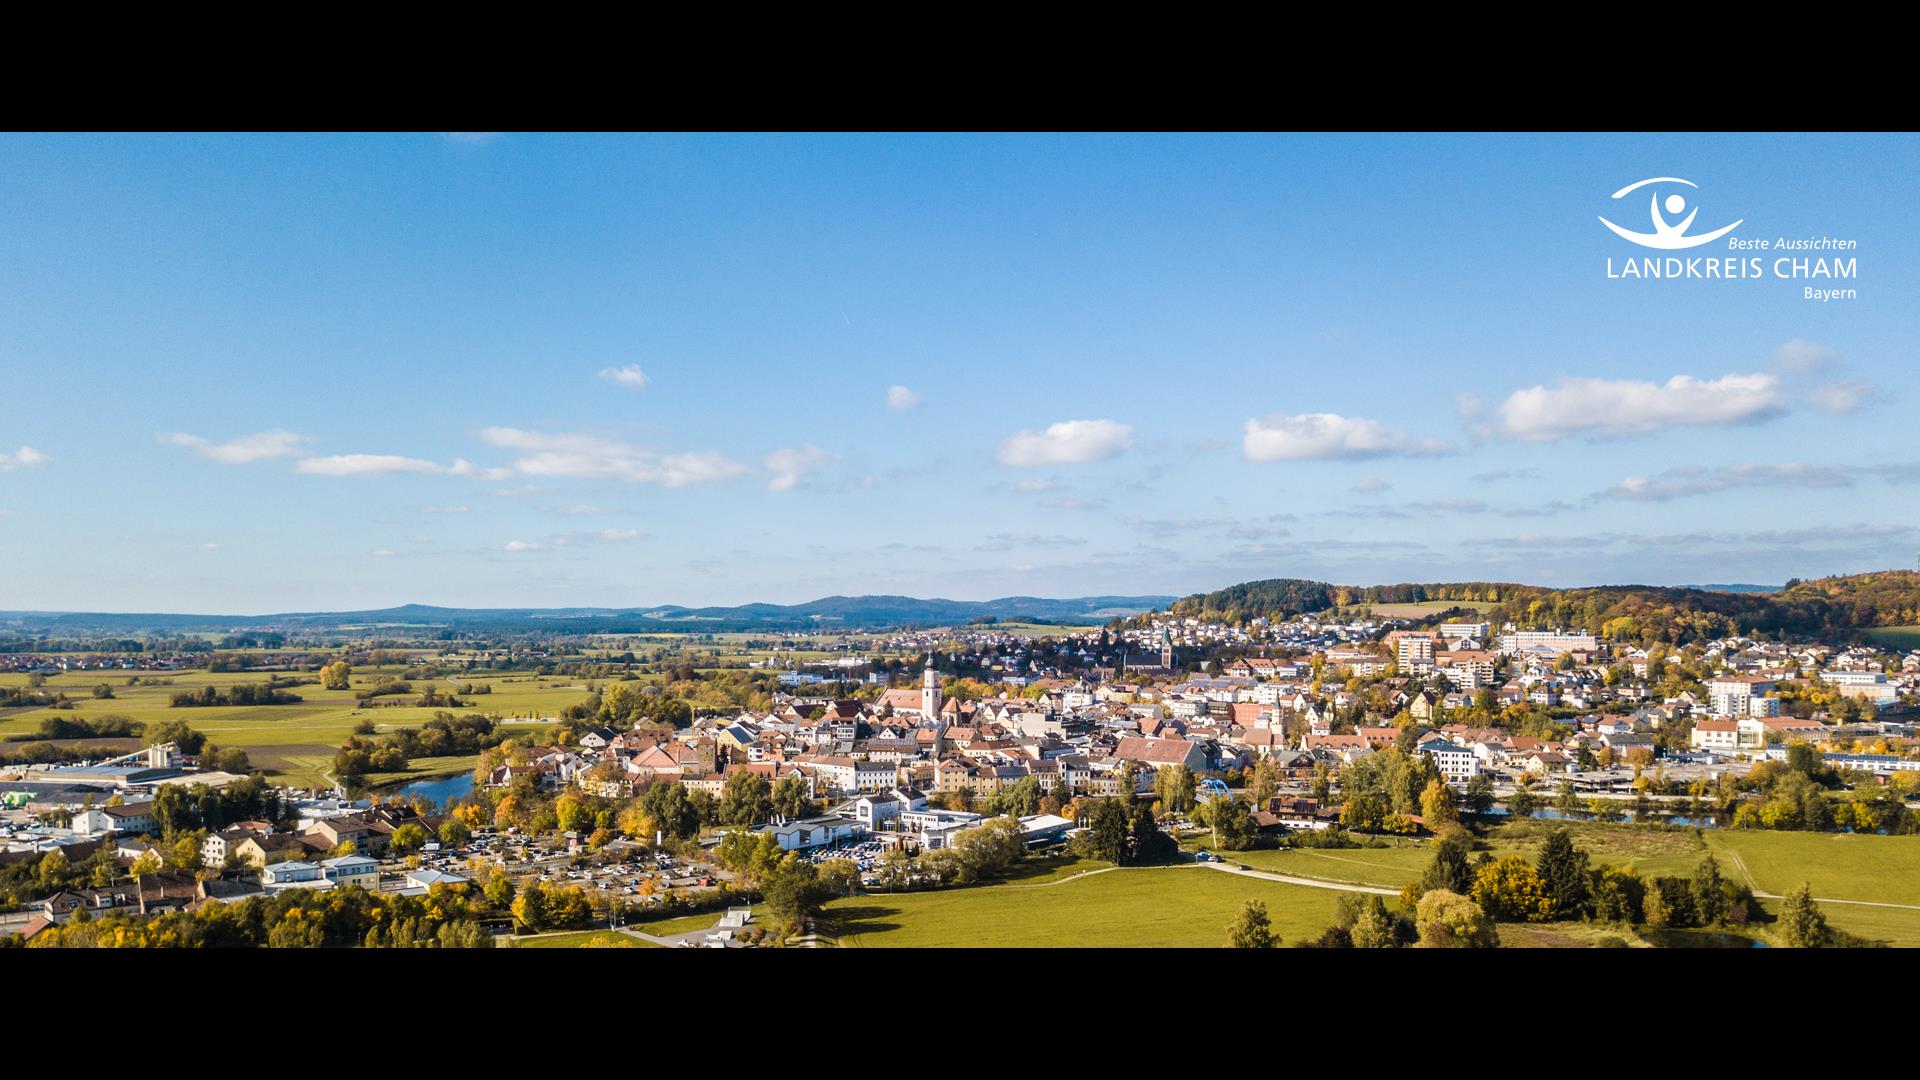 Panoramabild der Stadt Cham mit Landkreislogo